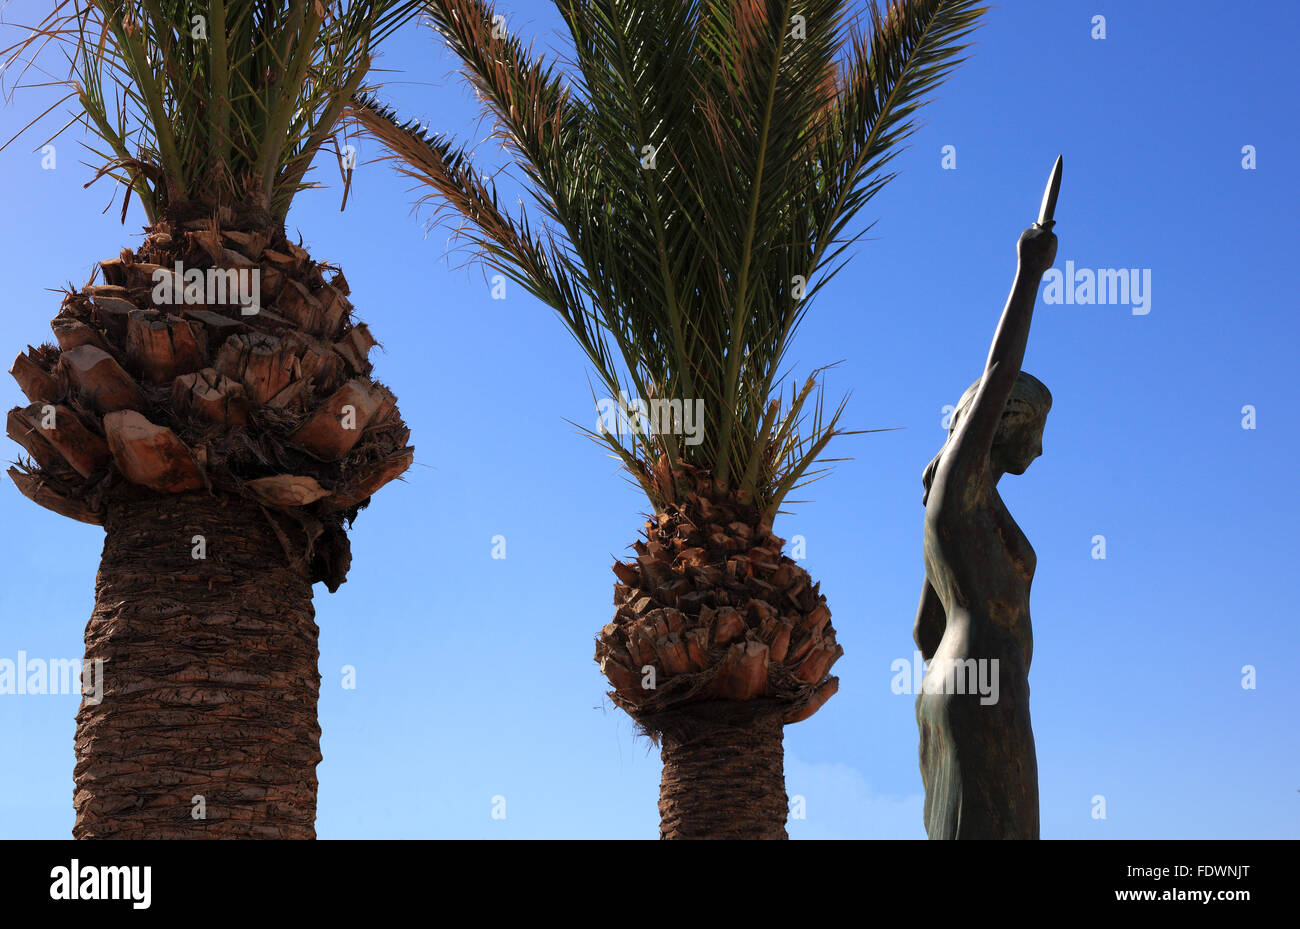 Creta, porto rethymno, palme e la statua che si trova nella città vecchia Foto Stock